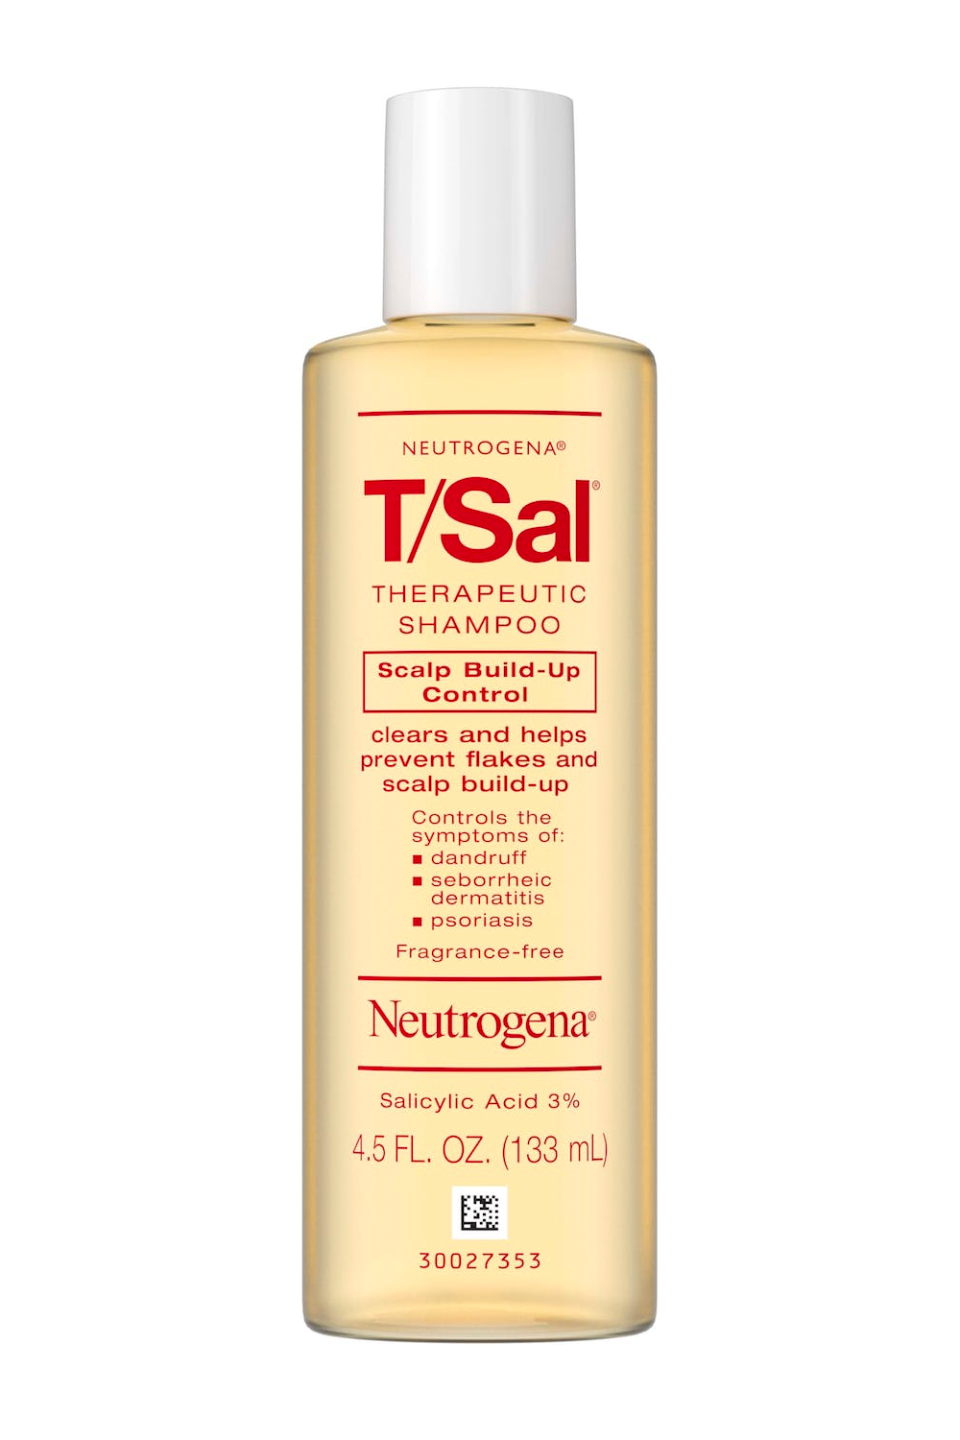 4) Neutrogena T/Sal Therapeutic Shampoo